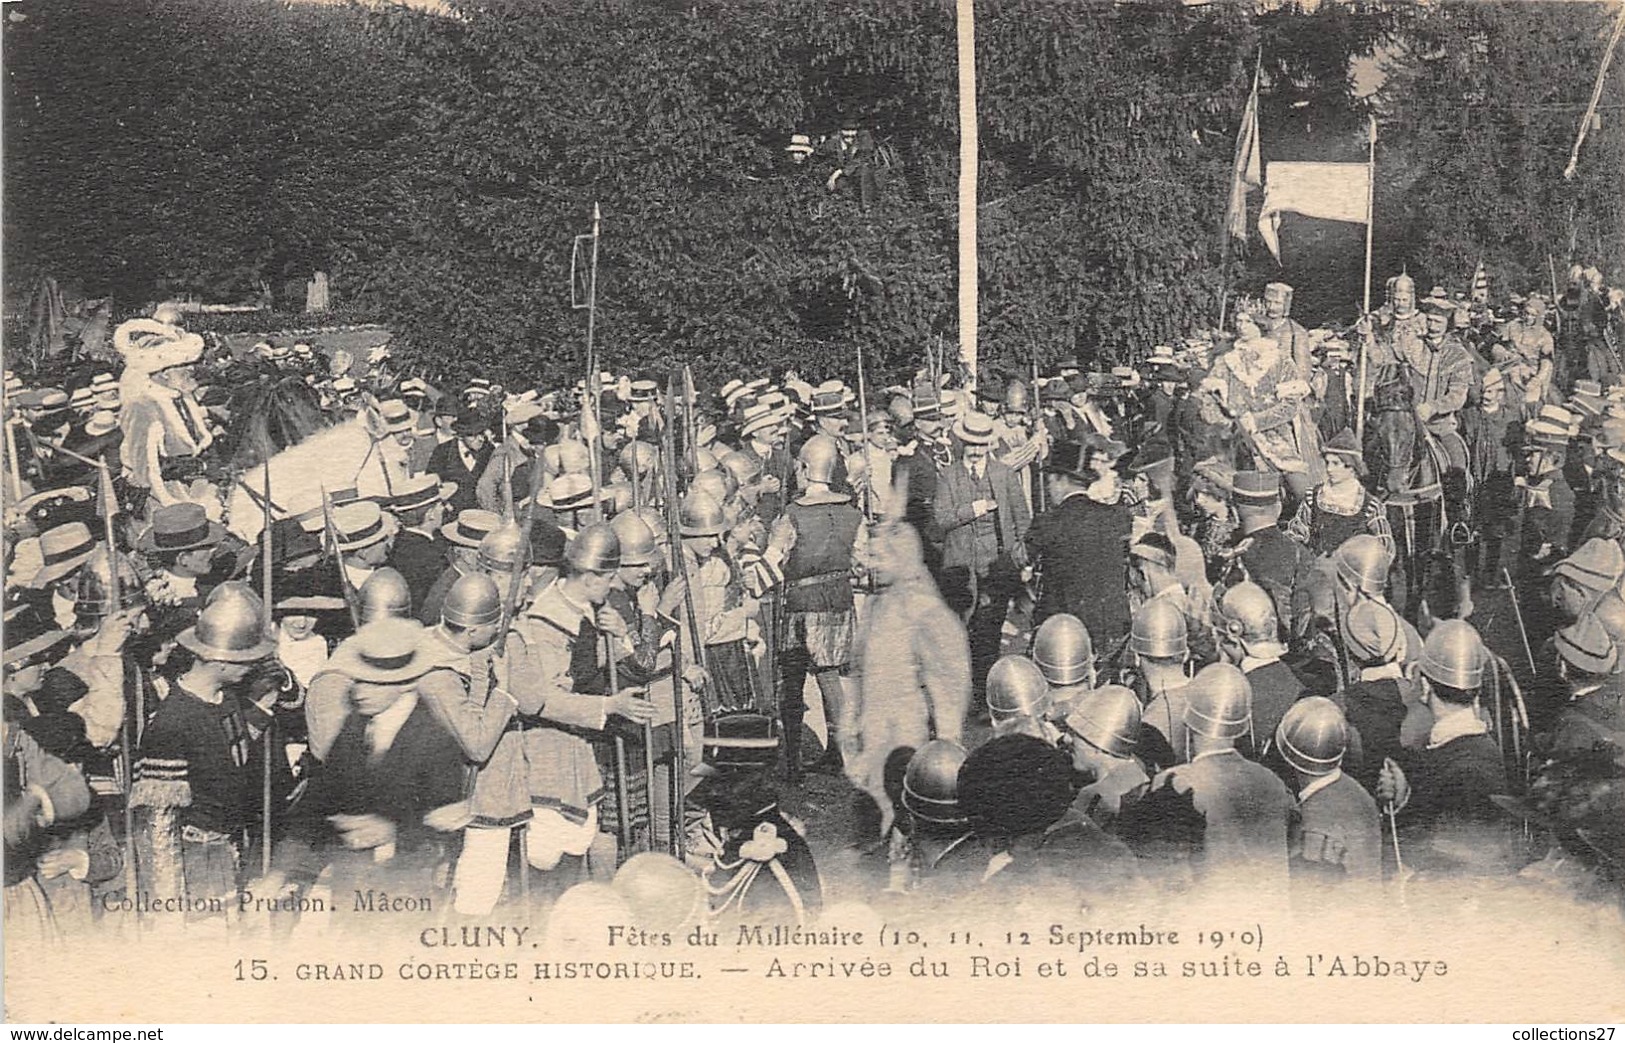 71-CLUNY- FÊTES DU MILINAIRE, 1910 , GRAND CORTEGE HISTORIQUE,  ARRIVEE DU ROI ET DE SA SUITE A L'ABBAYE. - Cluny